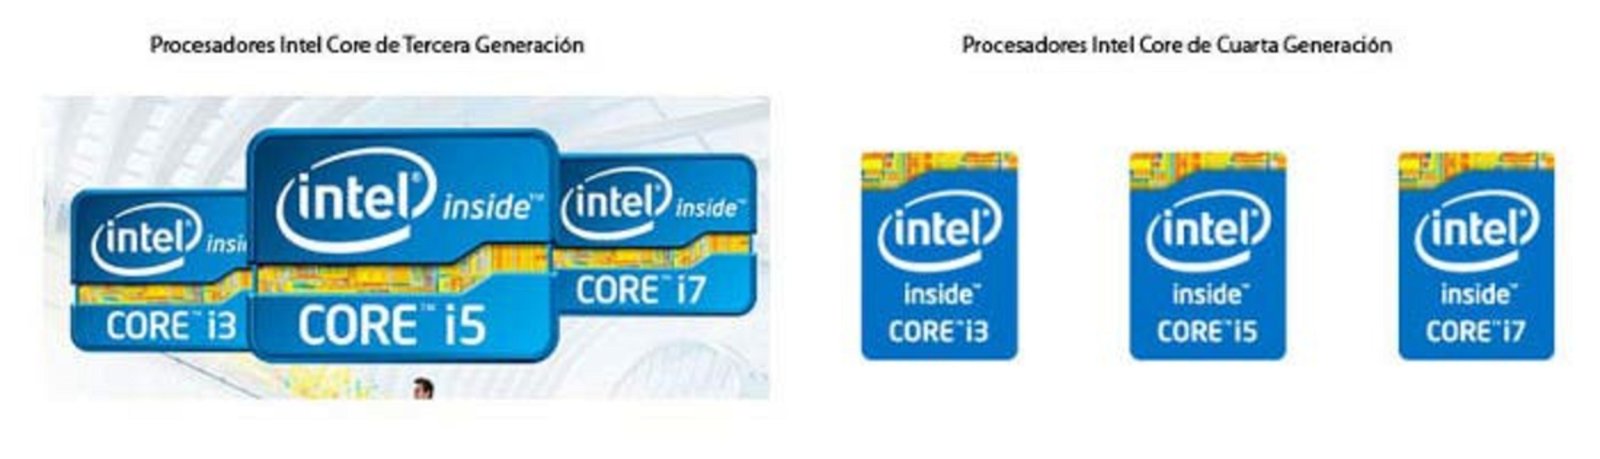 Etiquetas Procesadores Intel Core